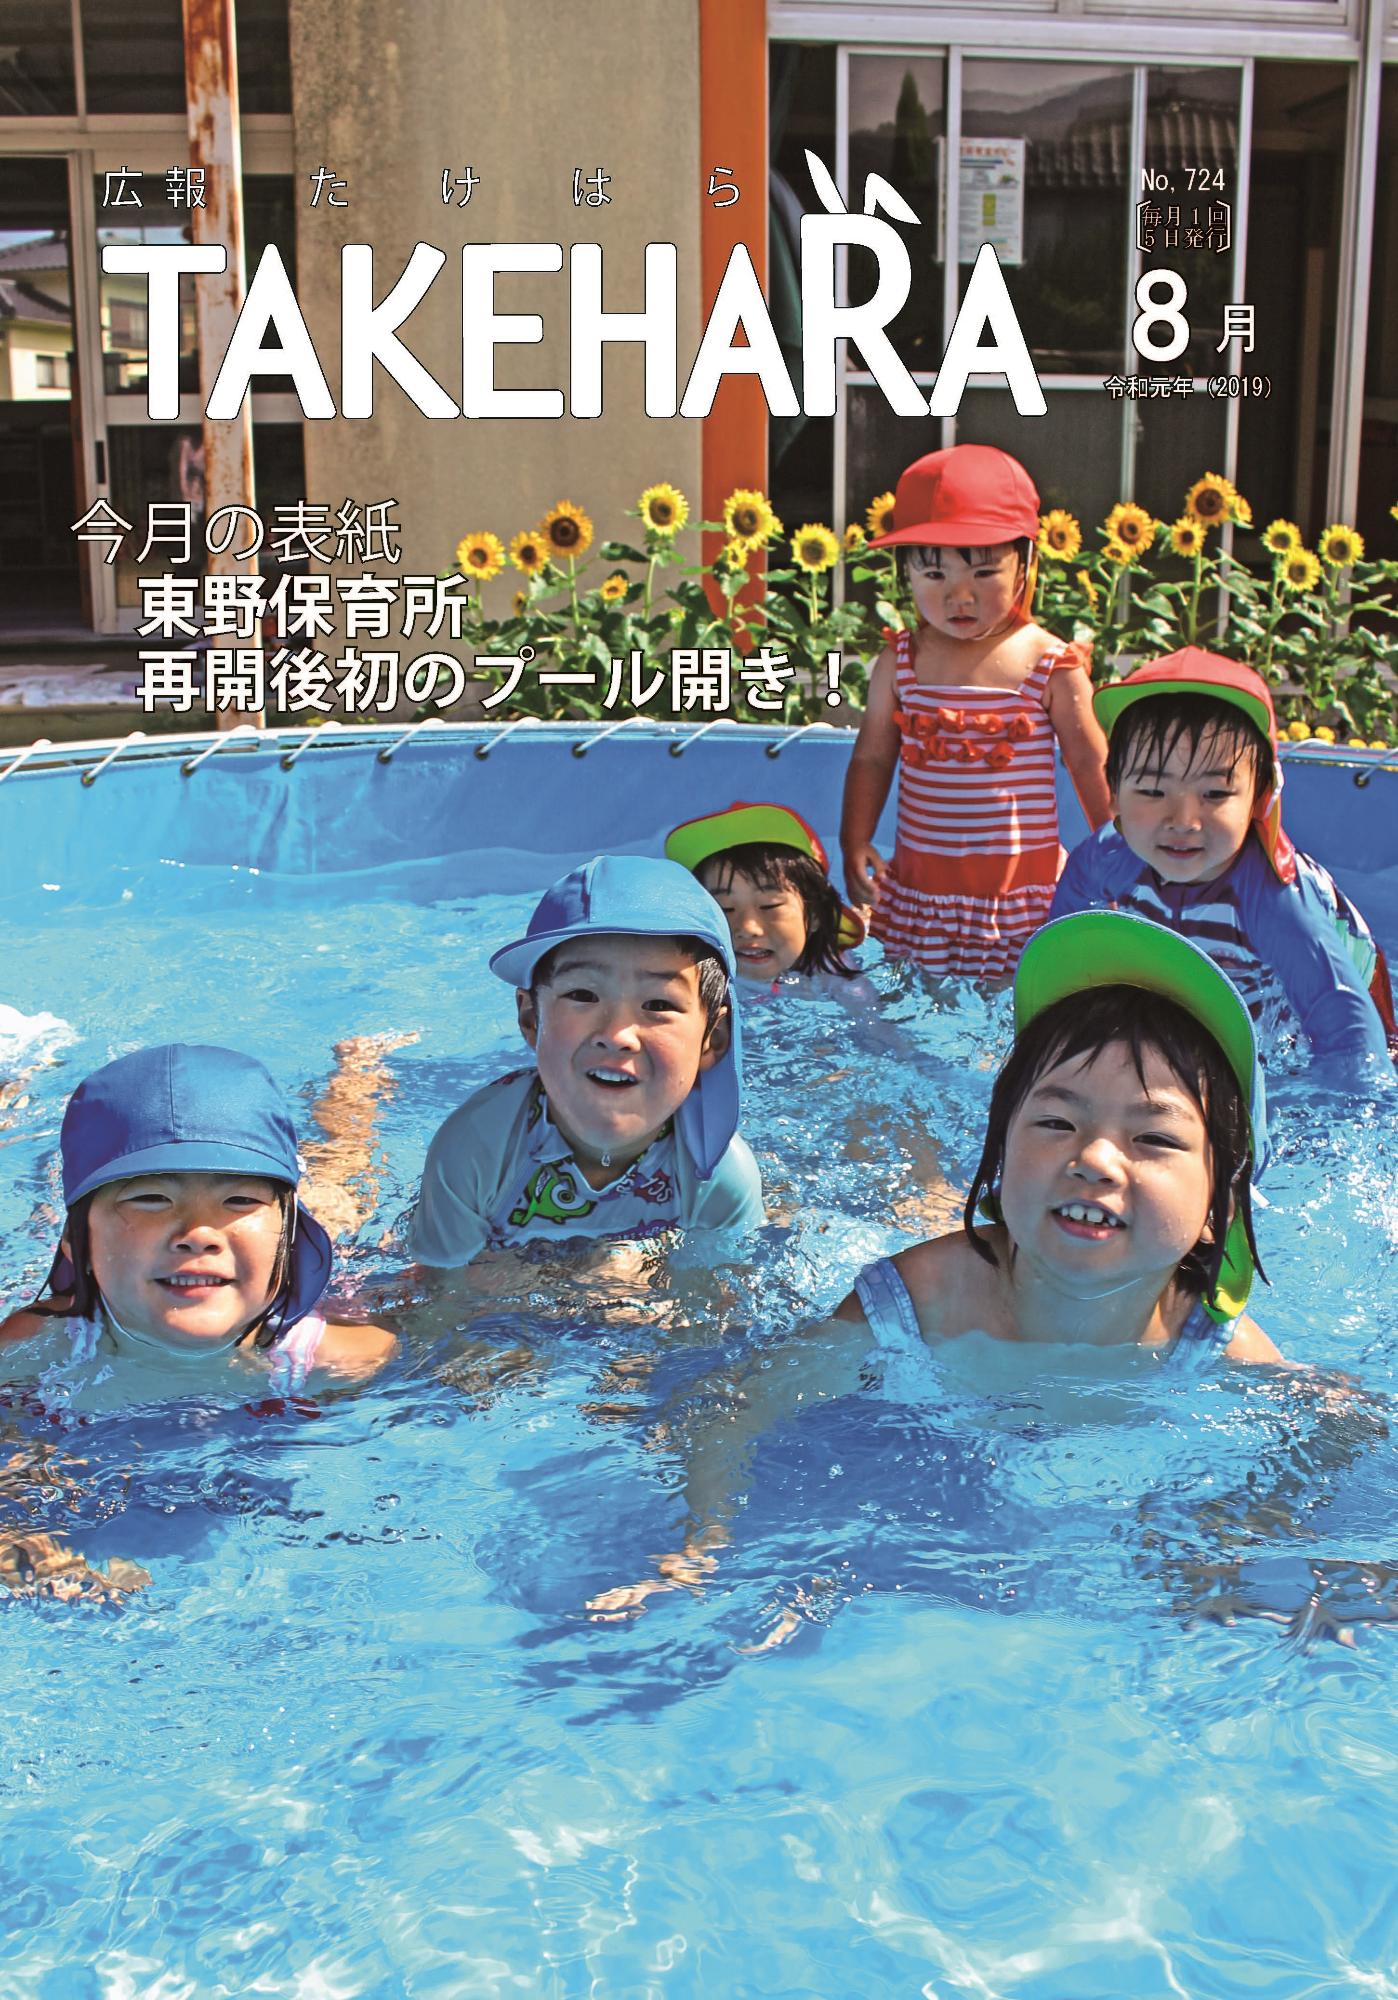 広報たけはら令和元年8月号「東野保育所 再開後初のプール開き！」